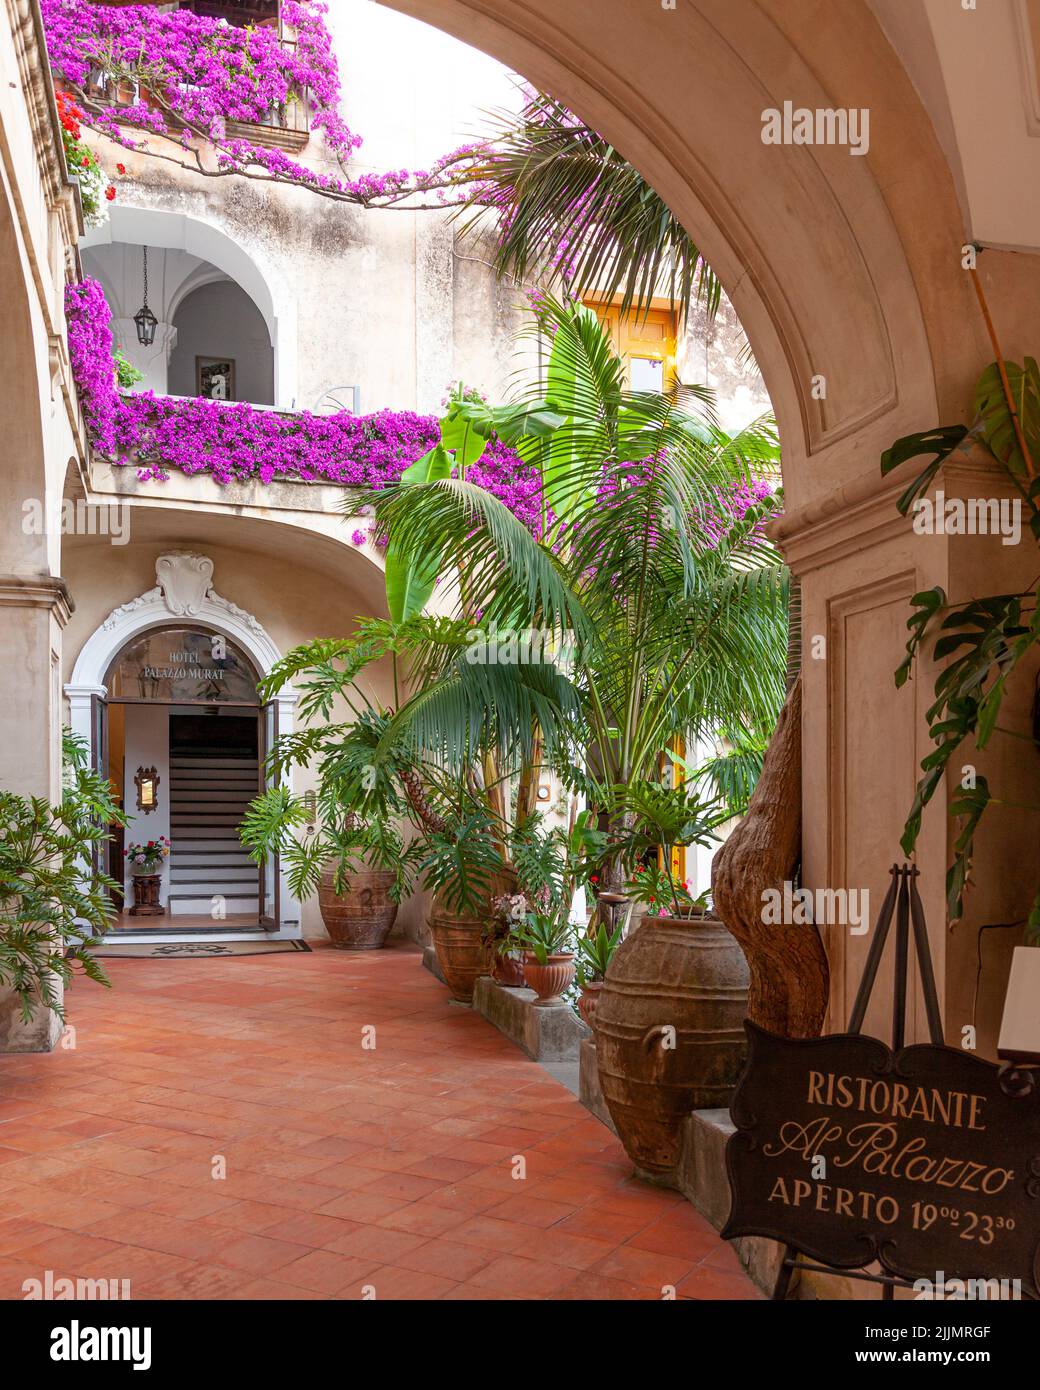 Entrance to Hotel Palazzo Murat, Positano, Italy Stock Photo